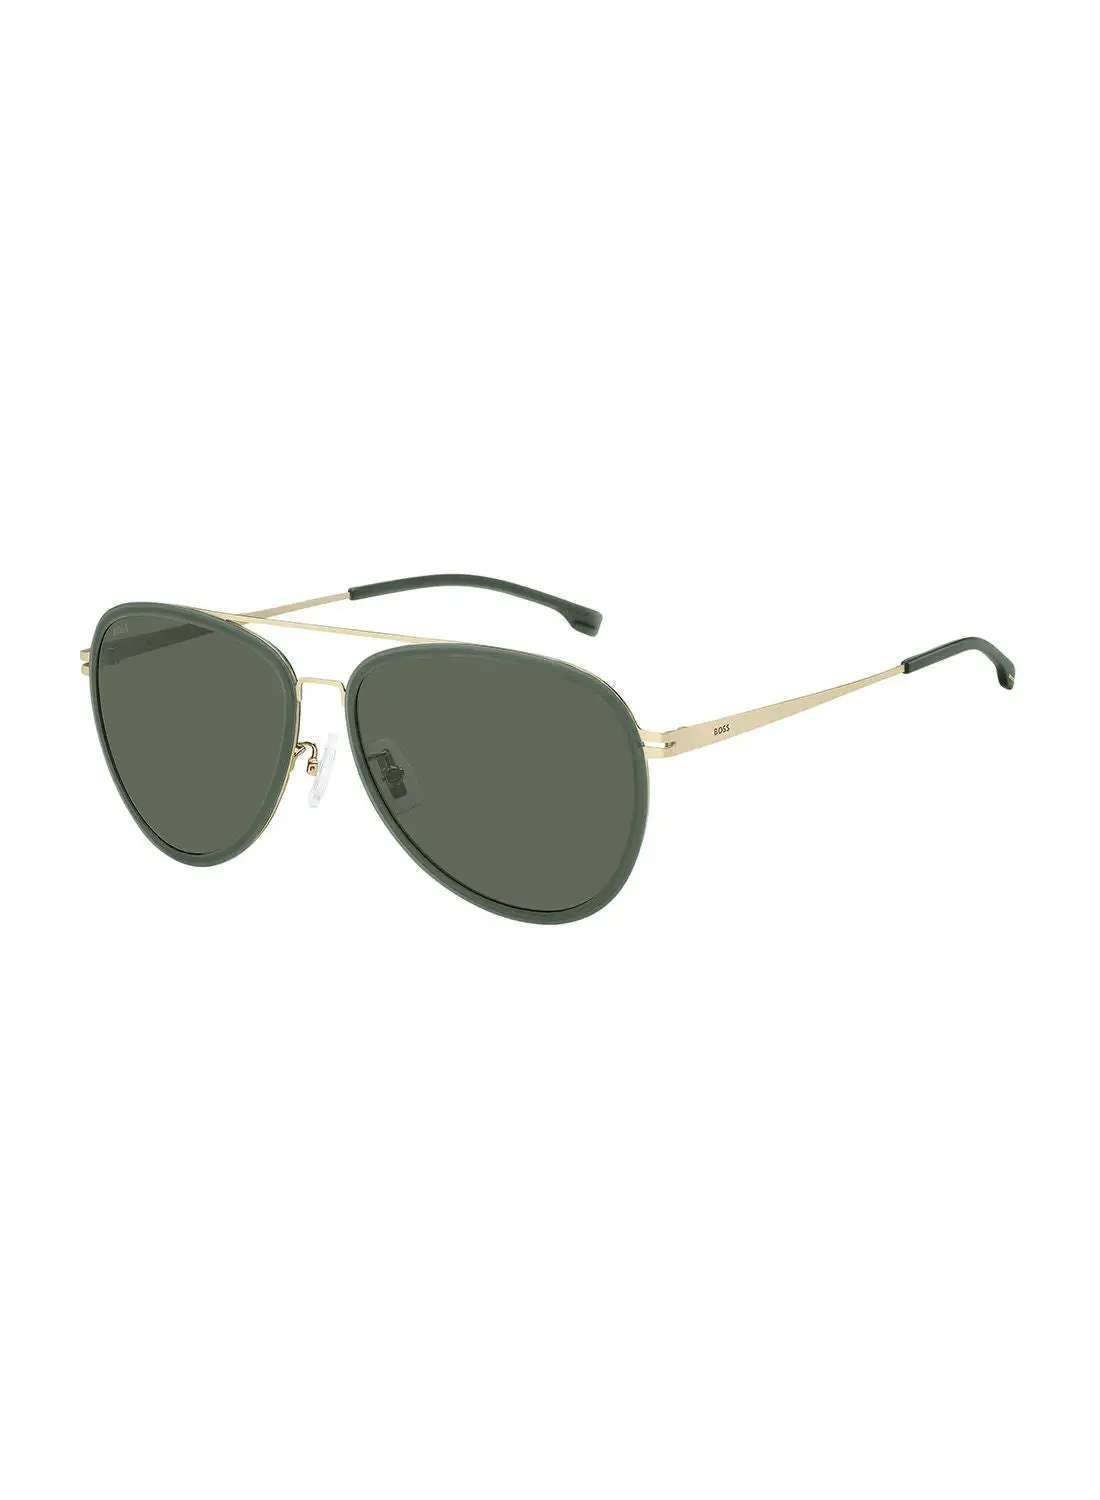 HUGO BOSS Men's UV Protection Pilot Sunglasses - Boss 1466/F/Sk Mt Gd 61 - Lens Size: 61 Mm